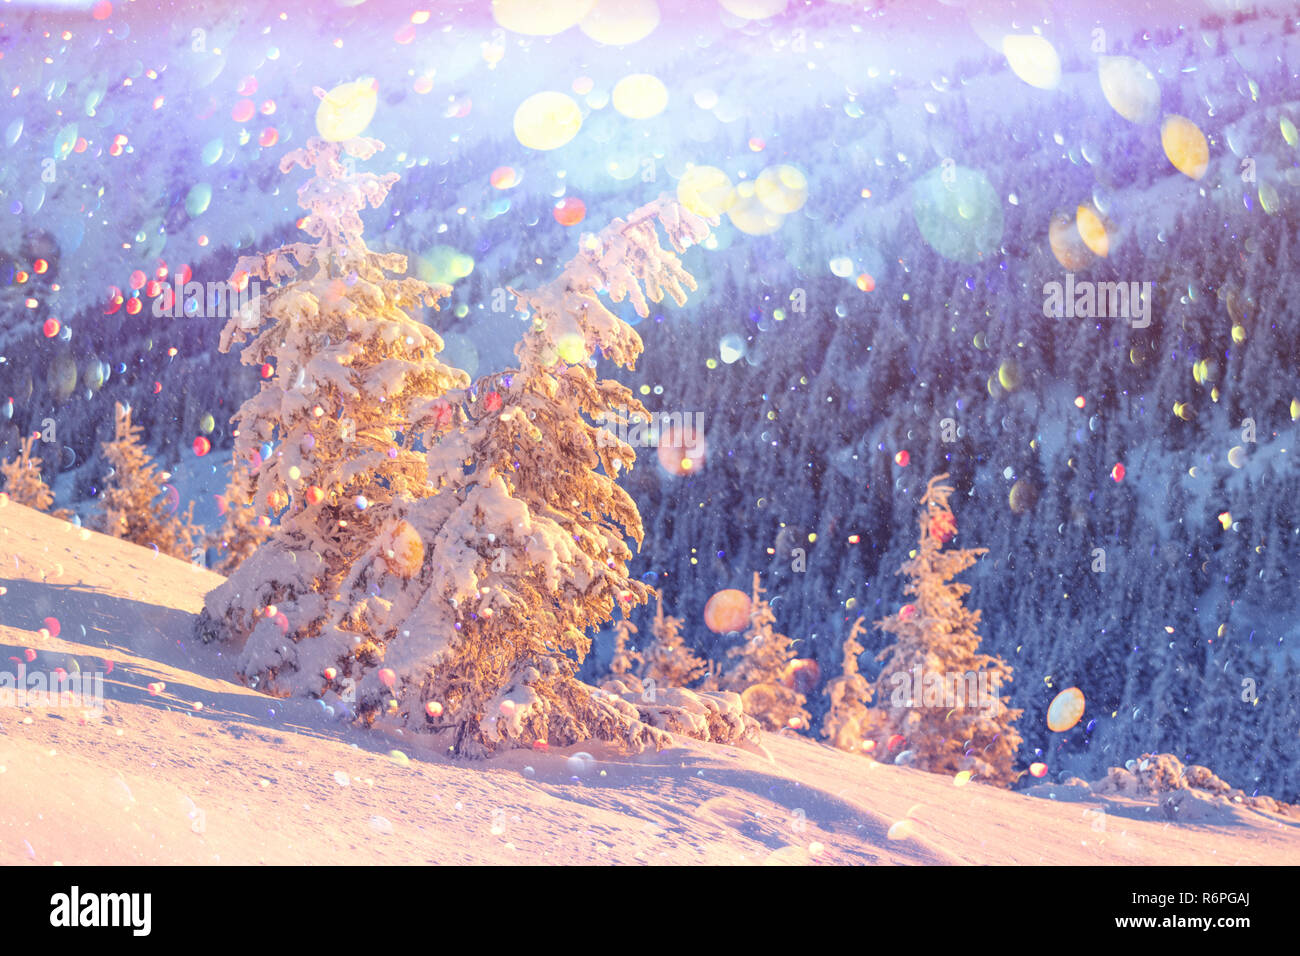 Orange fantastique paysage d'hiver dans les montagnes de neige par la lumière du soleil rougeoyant. Scène hivernale spectaculaire avec des arbres enneigés. Lumière effet bokeh DOF post-traitement Banque D'Images